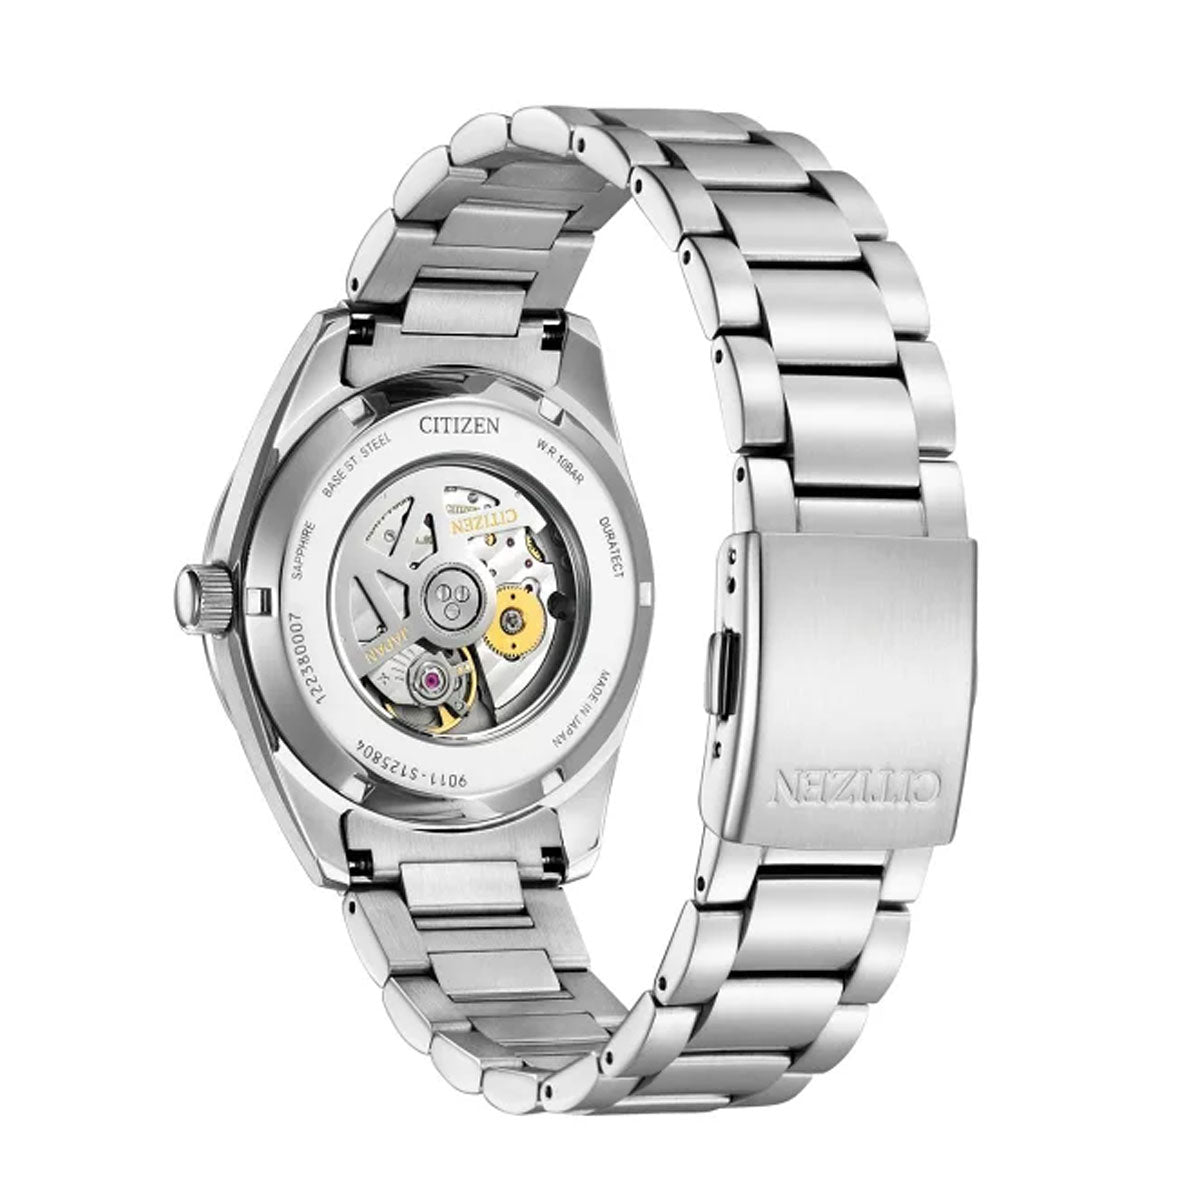 シチズンコレクション CITIZEN COLLECTION メカニカル 自動巻き 機械式 腕時計 メンズ クラシカルライン NB1050-59A